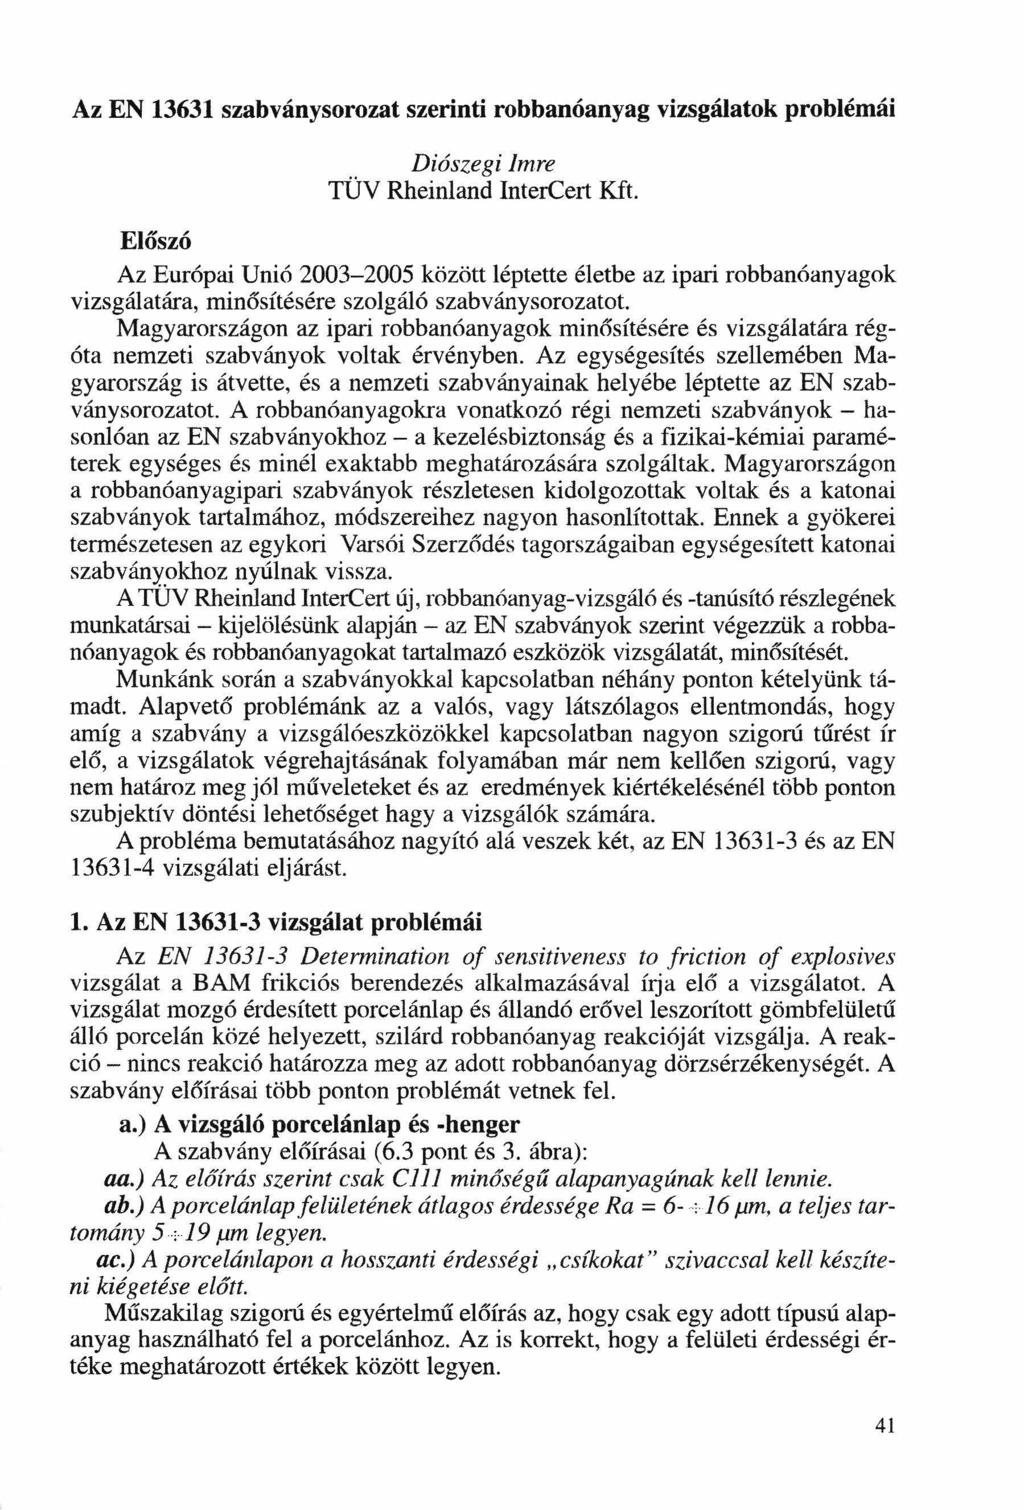 Az EN 13631 szabványsorozat szerinti robbanóanyag vizsgálatok problémái Diószegi Imre TÜV Rheinland lntercert Kft.